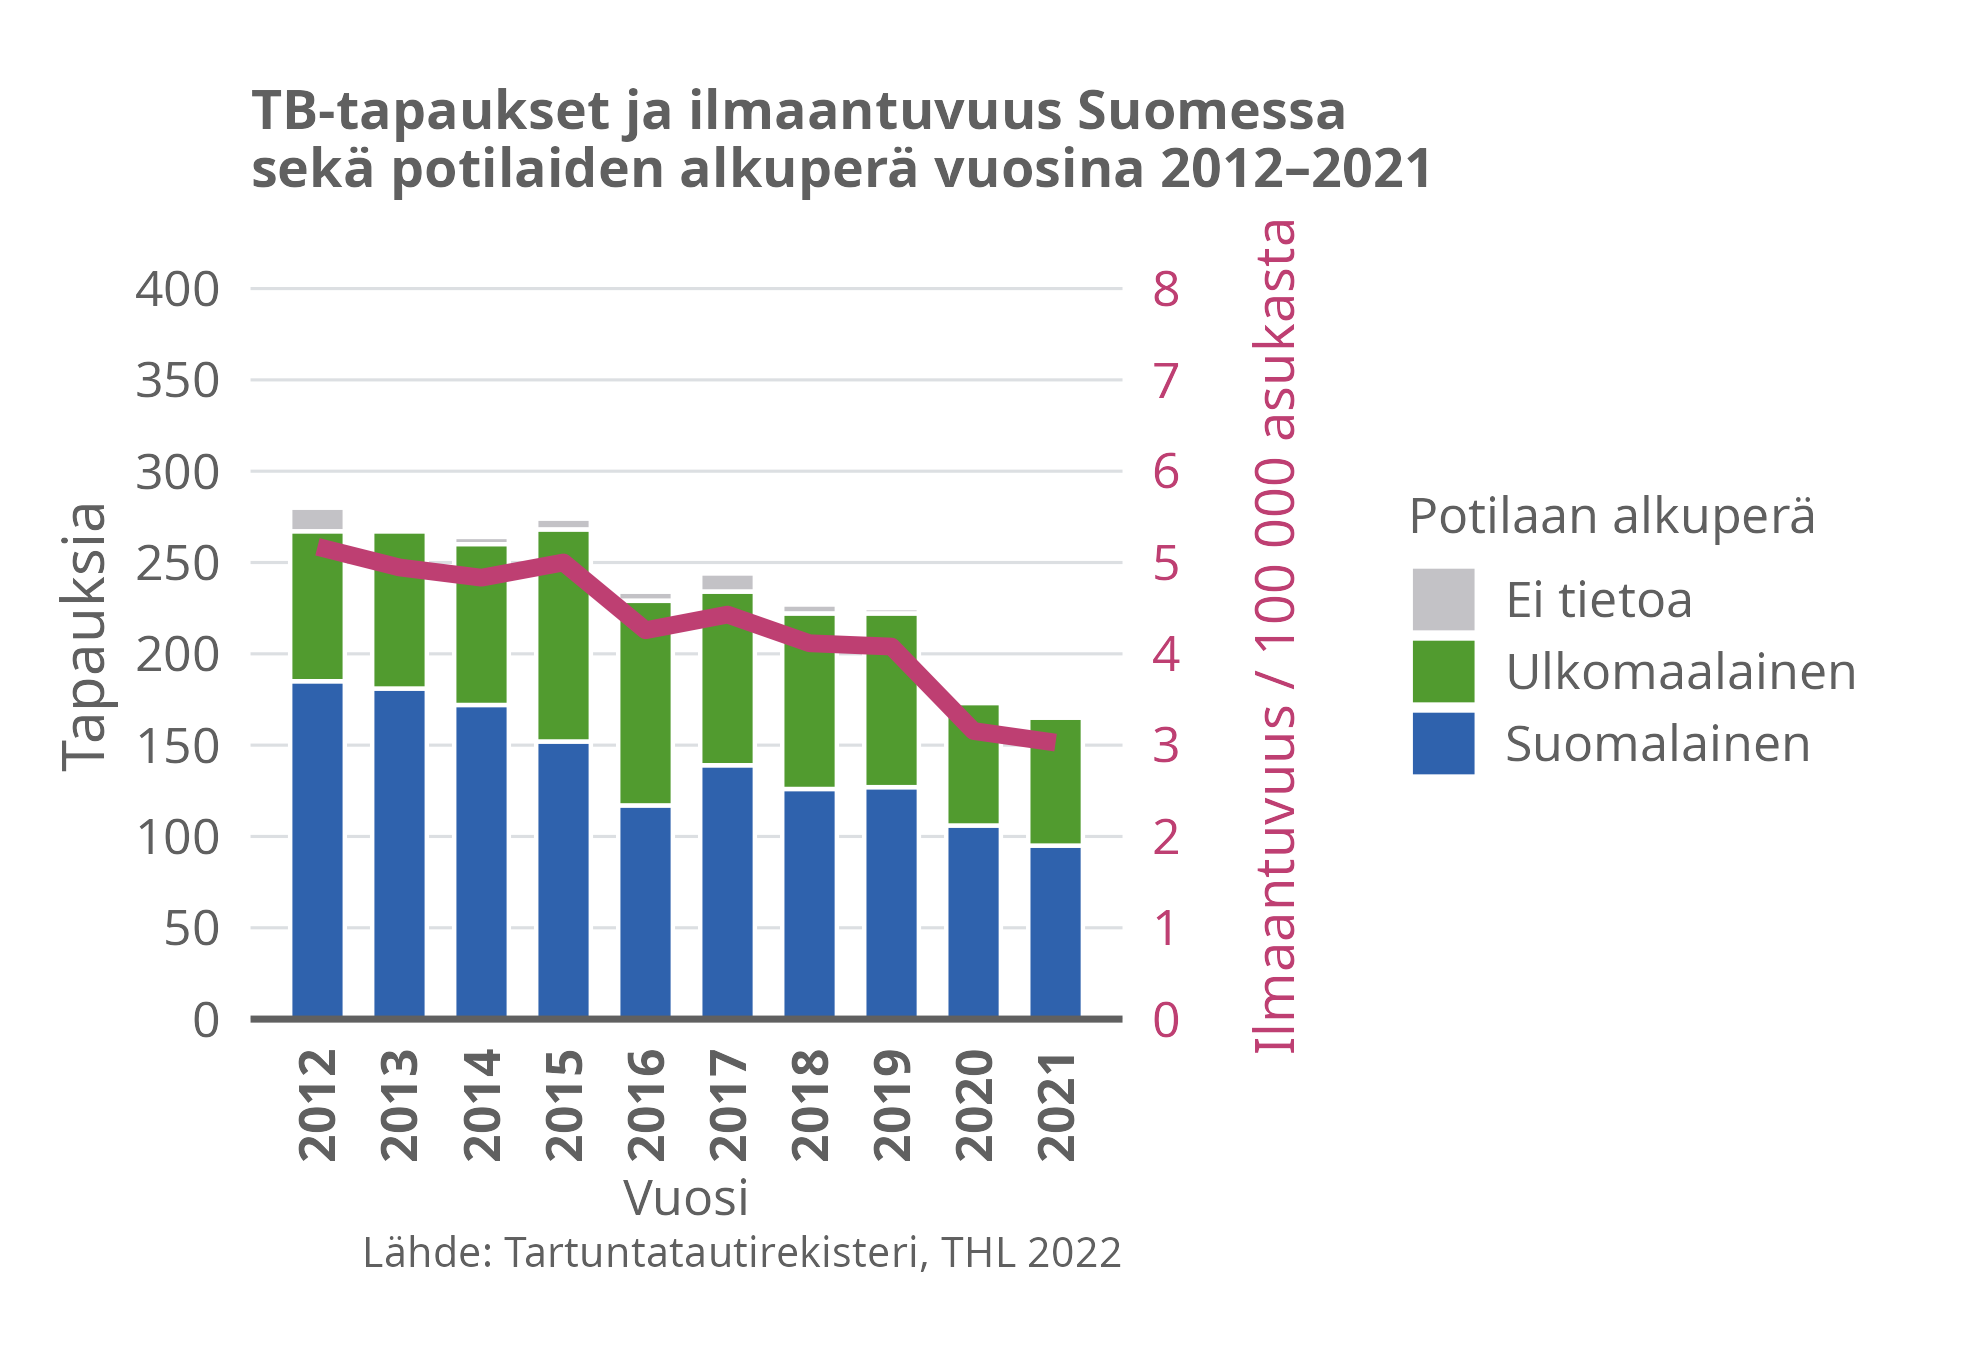 TB-tapaukset ja ilmaantuvuus Suomessa sekä potilaiden alkuperä vuosina 2012-2021.